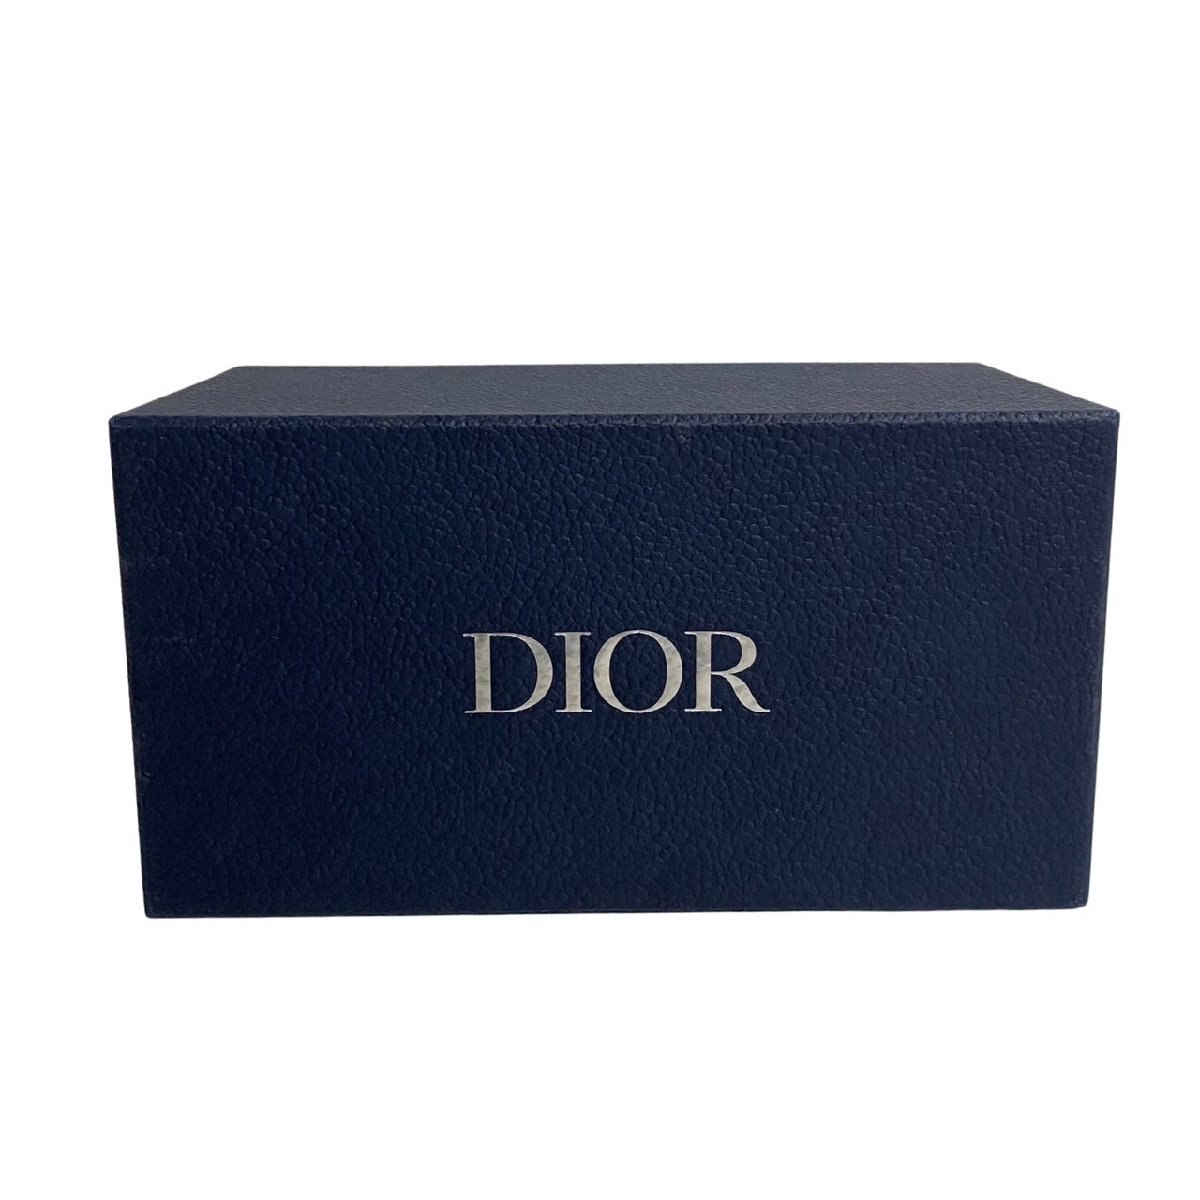 未使用保管品 箱 袋付き Christian Dior ディオール サドル トロッター 柄 キャンバス レザー 本革 ミニ ショルダーバッグ ブラック 26257_画像9